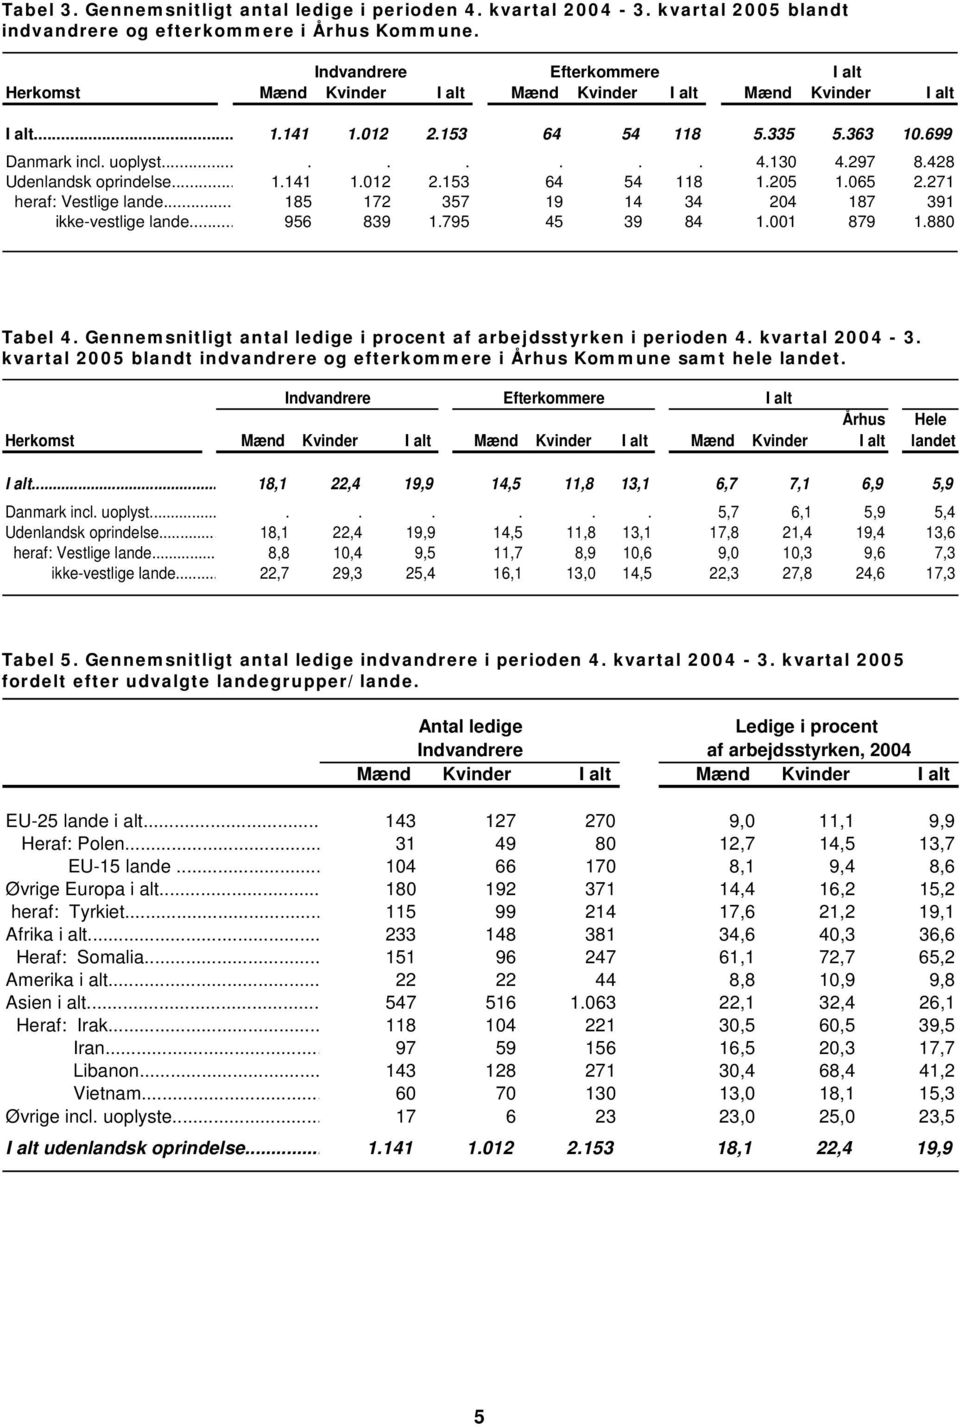 .. 95 39 1.795 5 39 1.1 79 1. Tabel. i procent af arbejdsstyrken i perioden. kvartal - 3. kvartal 5 blandt indvandrere og efterkommere i Århus Kommune samt hele landet.